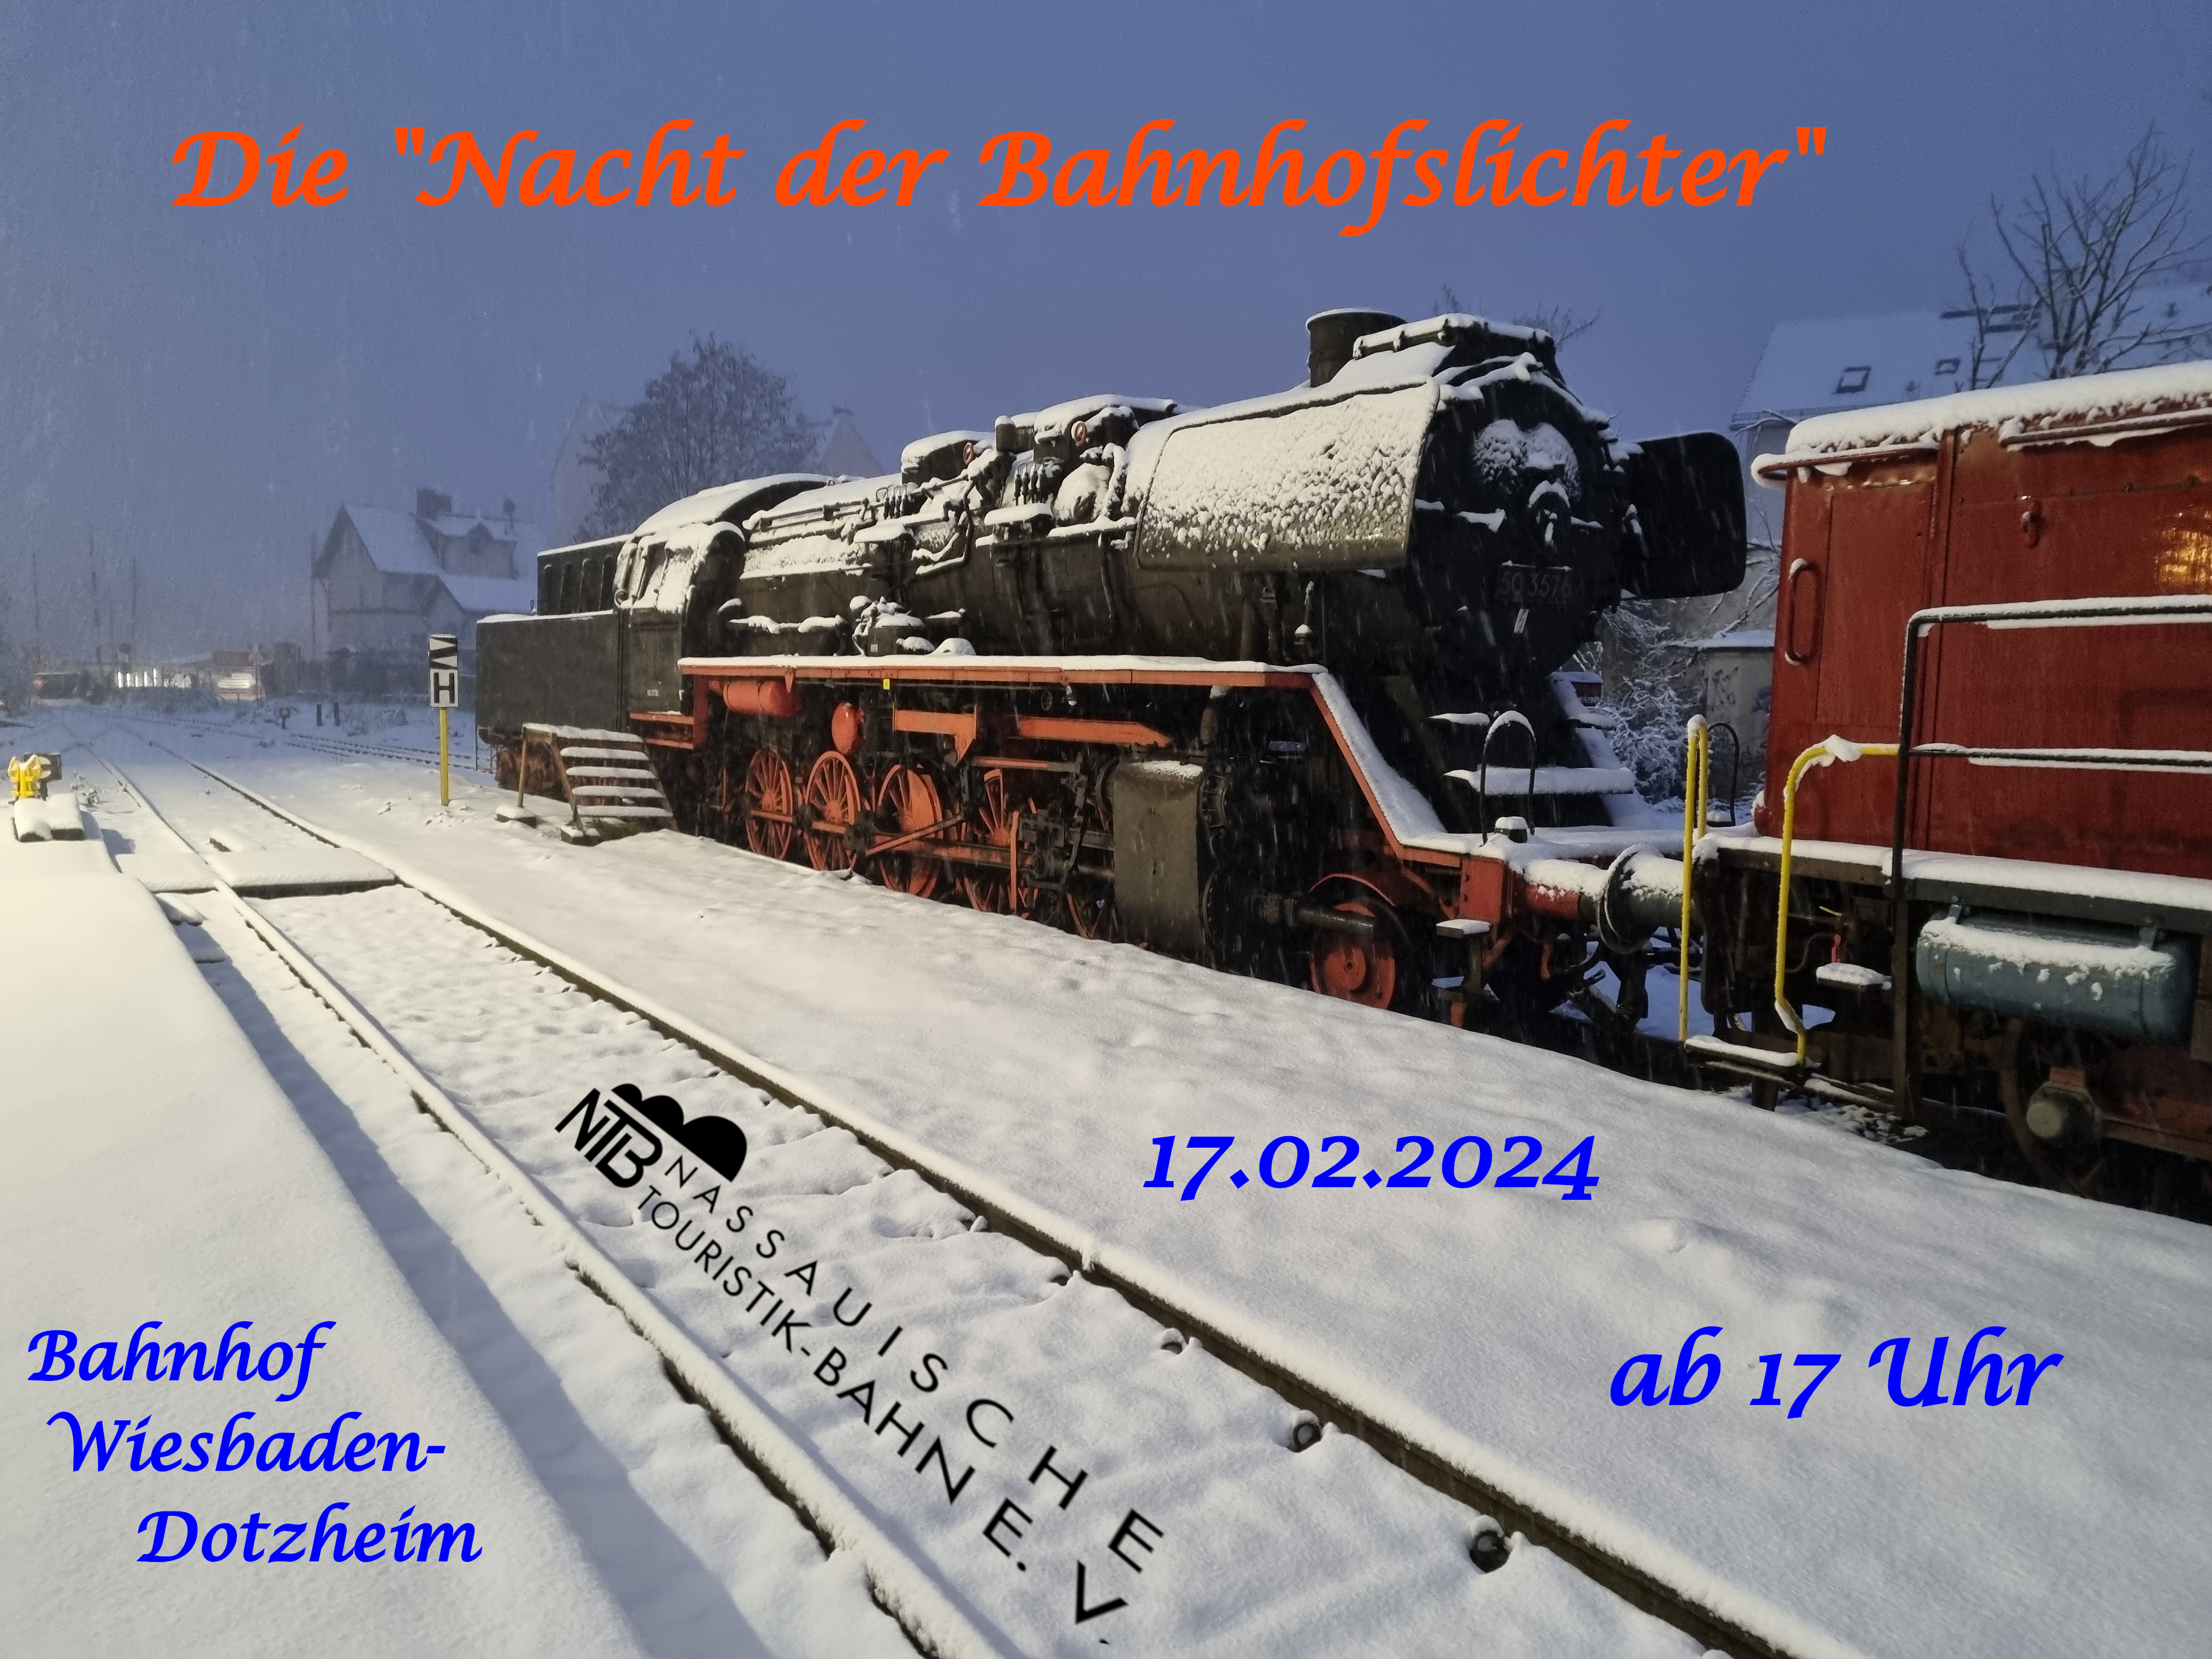 Dampflok im Schnee mit Schriftzug "Nacht der Bahnhofslichter"